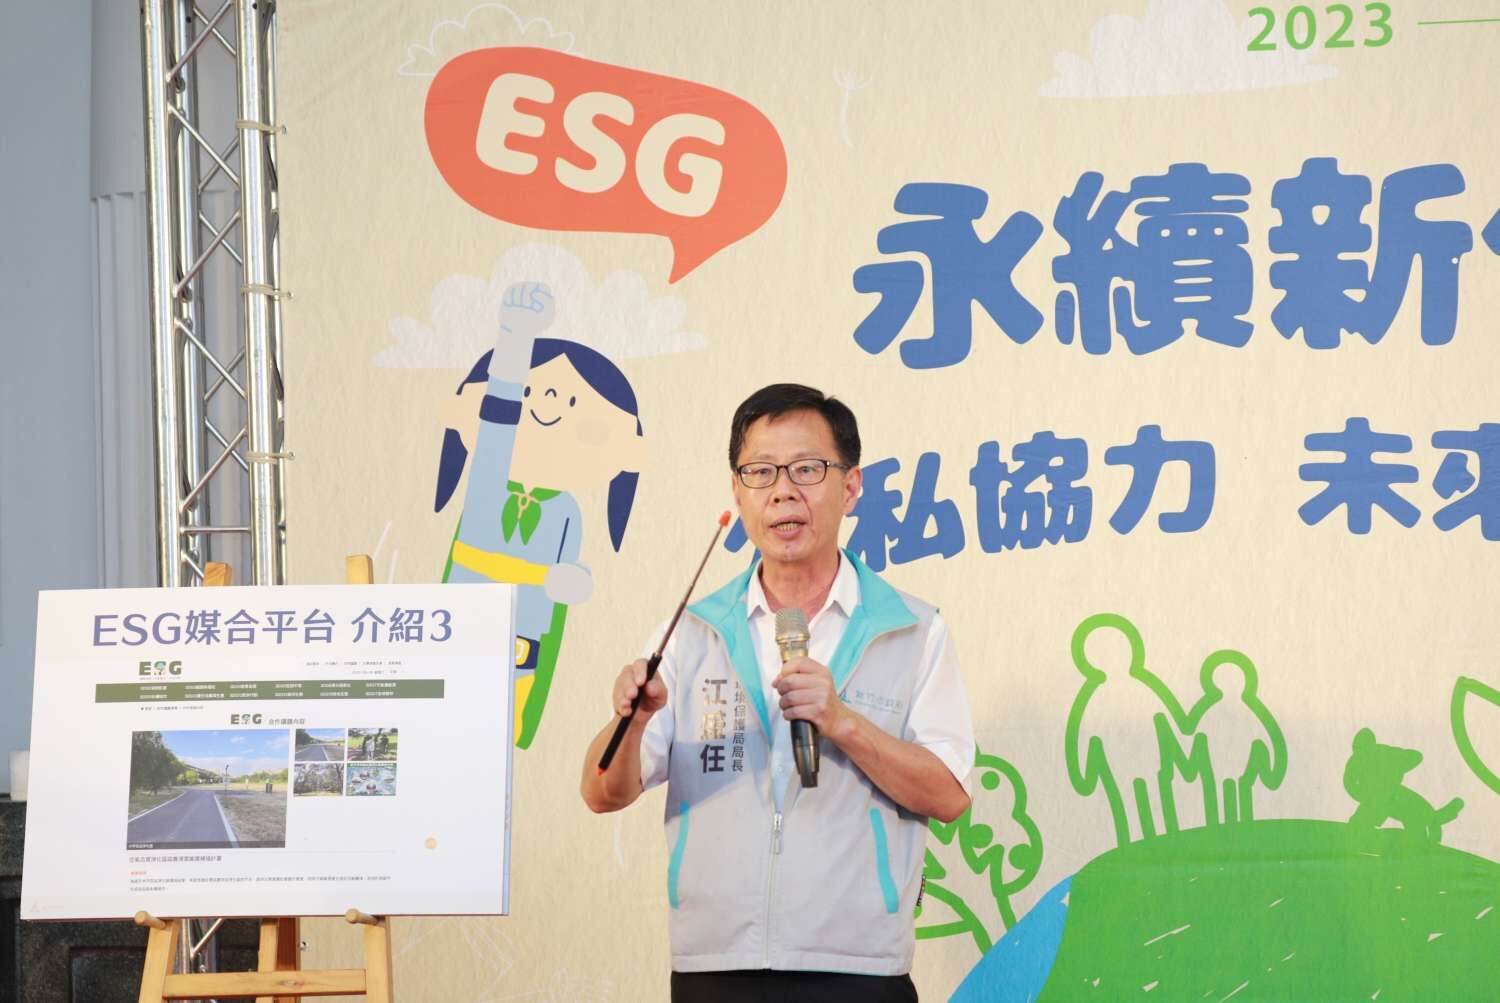 竹市全國首創ESG媒合平台　邀企業攜手打造「宜居永續」城市小圖共6張，pic3